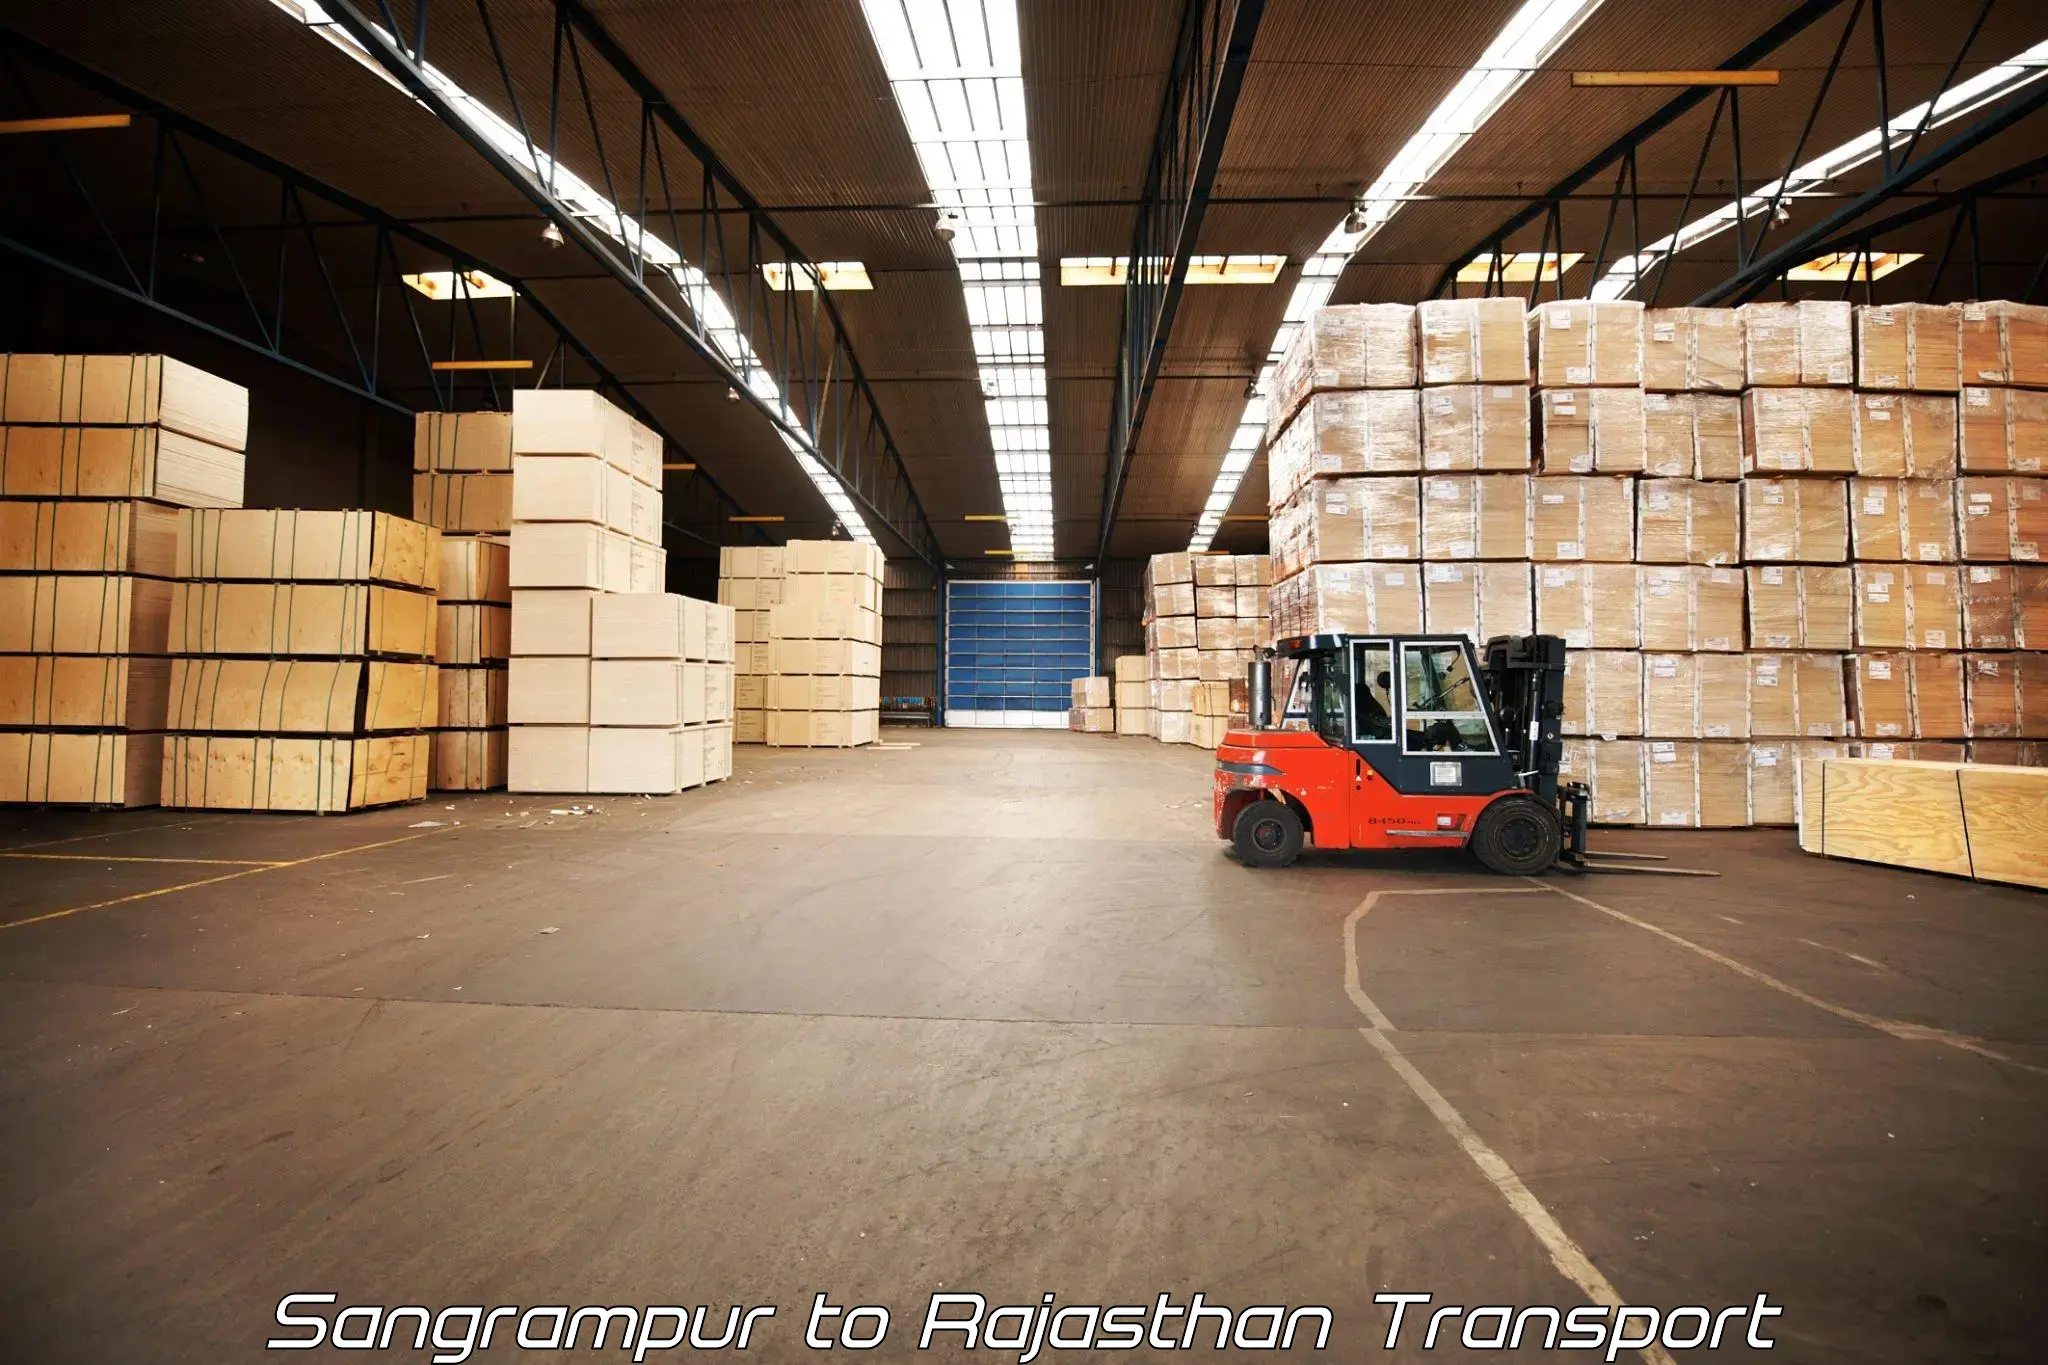 Transport in sharing Sangrampur to Rajasthan